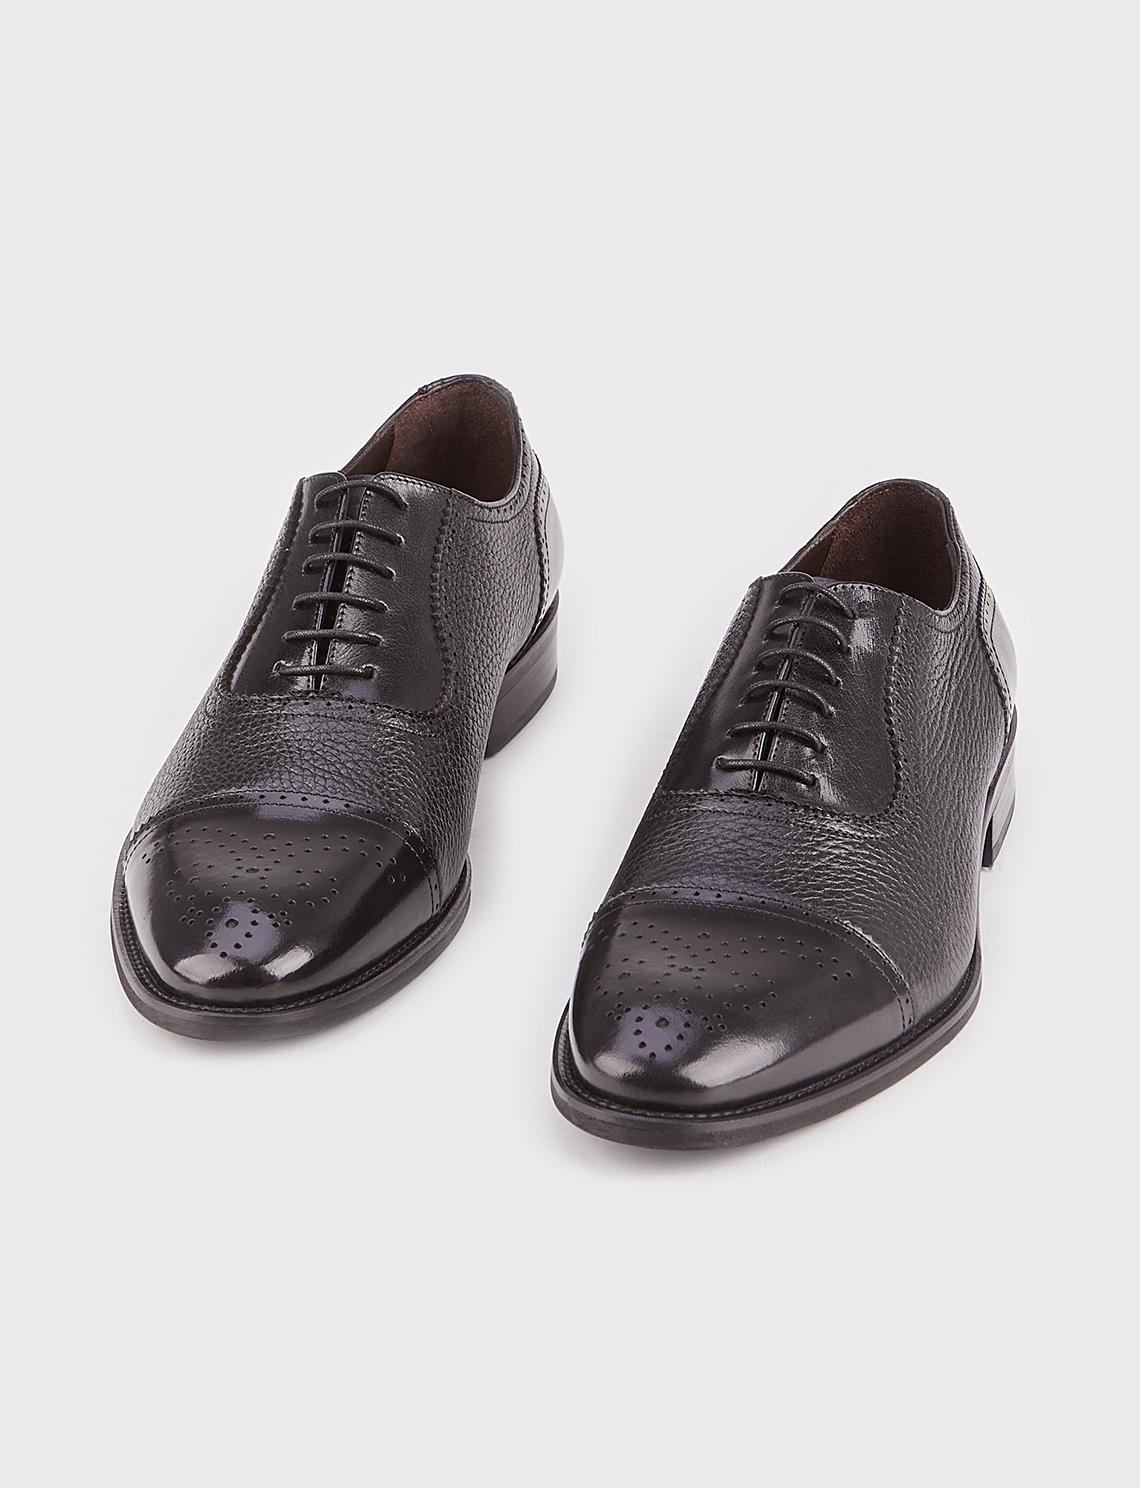 Microlight Taban Hakiki Deri Siyah Bağcıklı Erkek Klasik Ayakkabı | Cabani